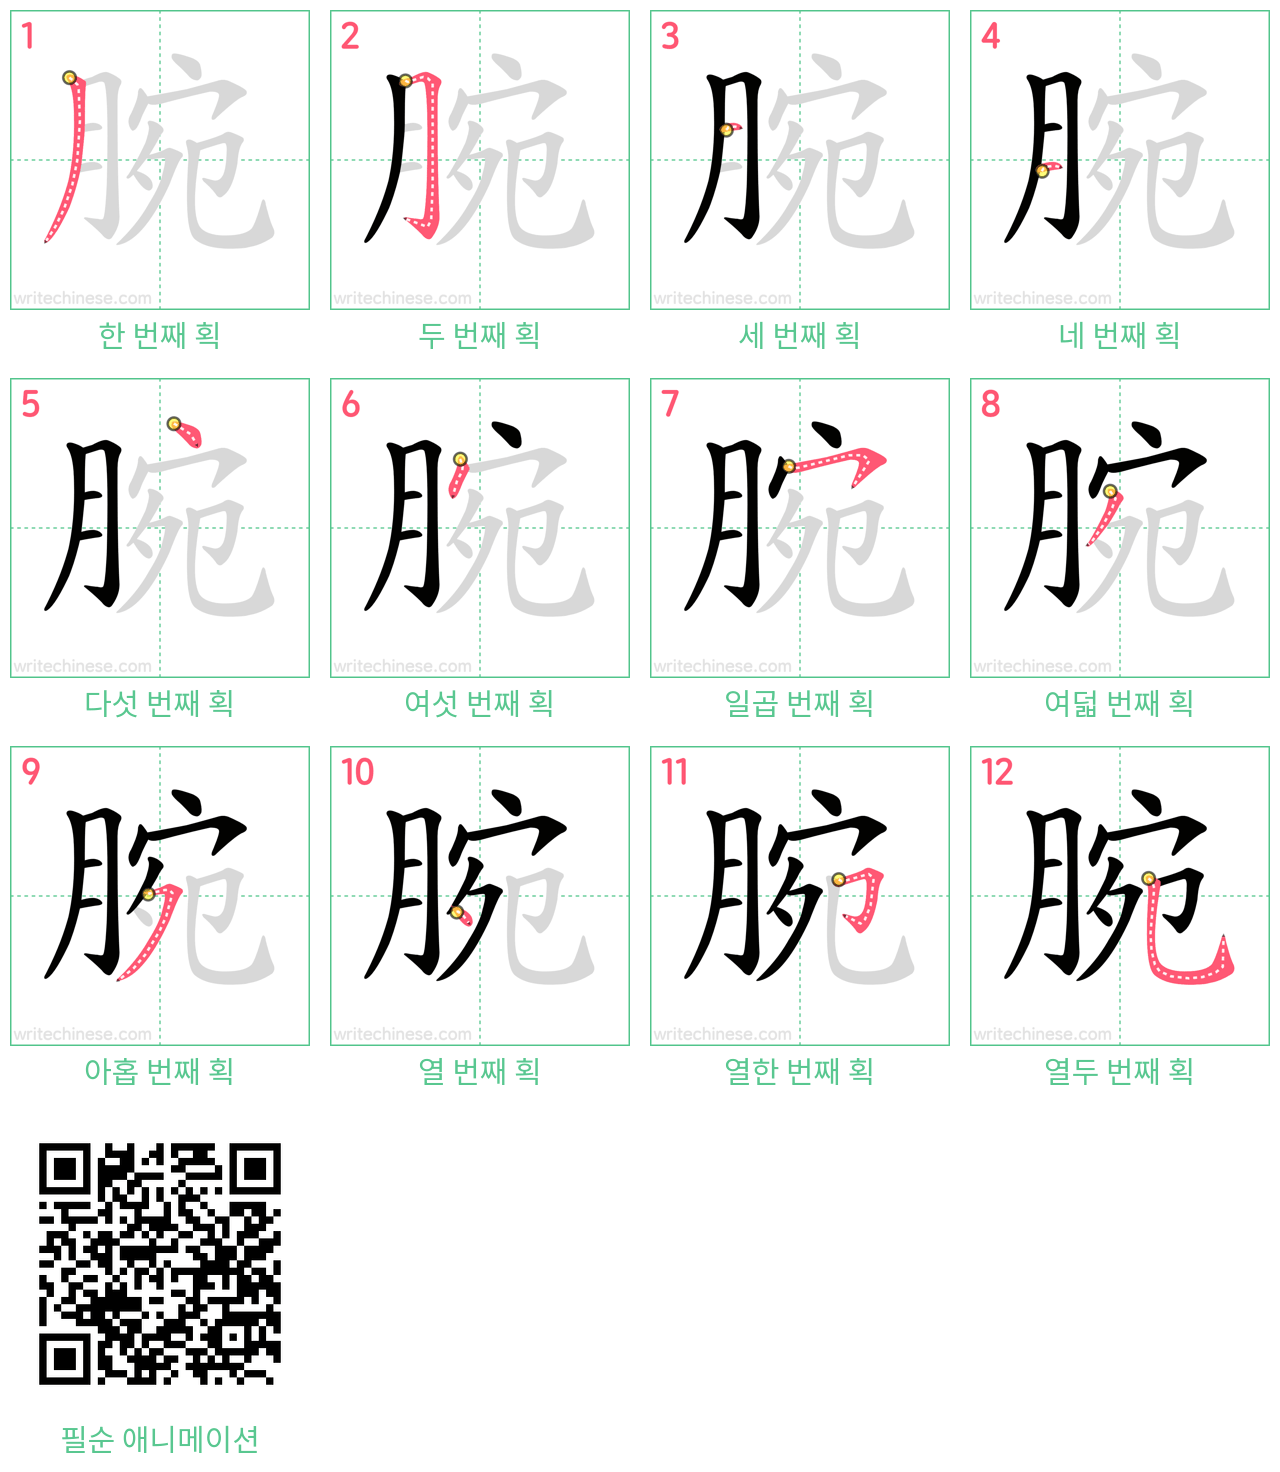 腕 step-by-step stroke order diagrams